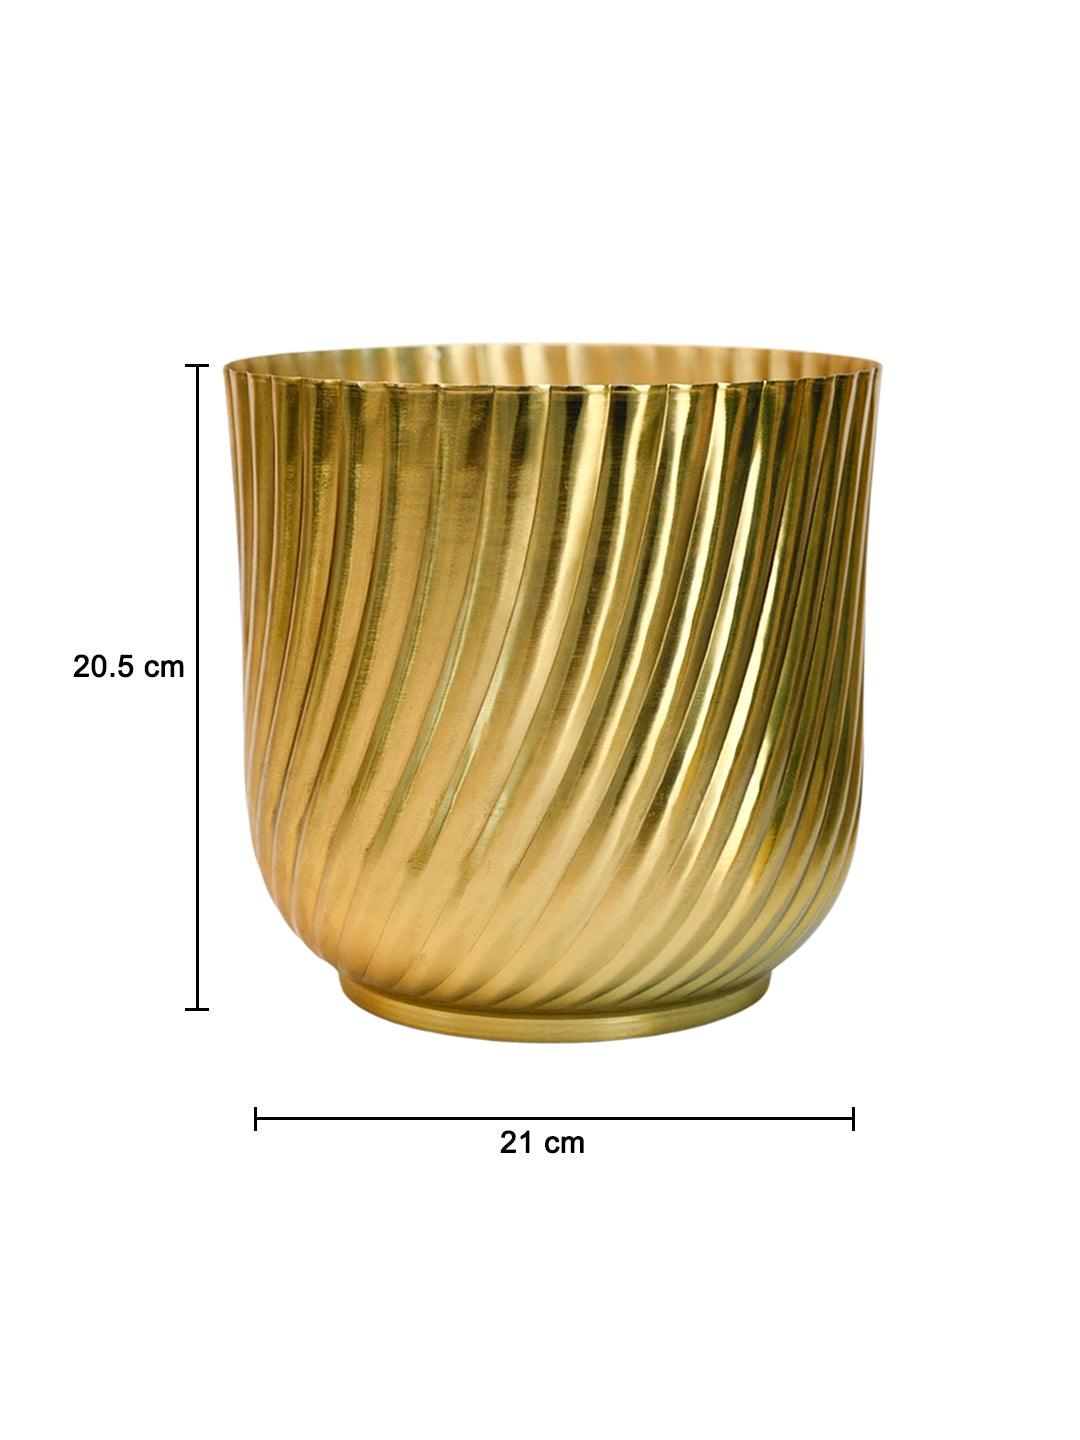 Ribbed Metal Vase - Golden - MARKET99